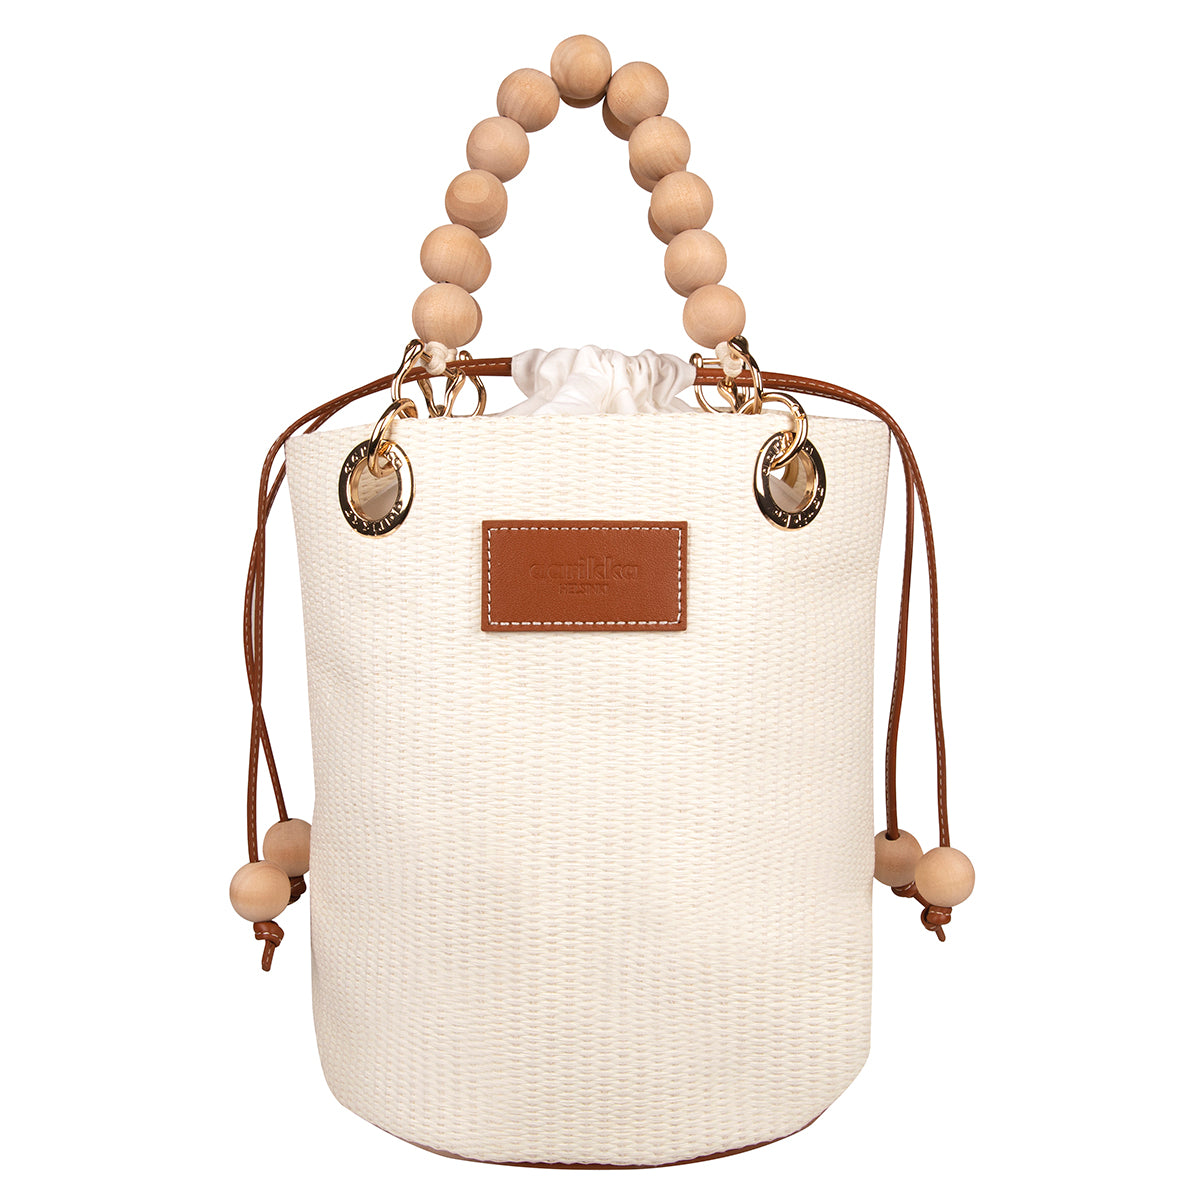 Laura basket bag, brown